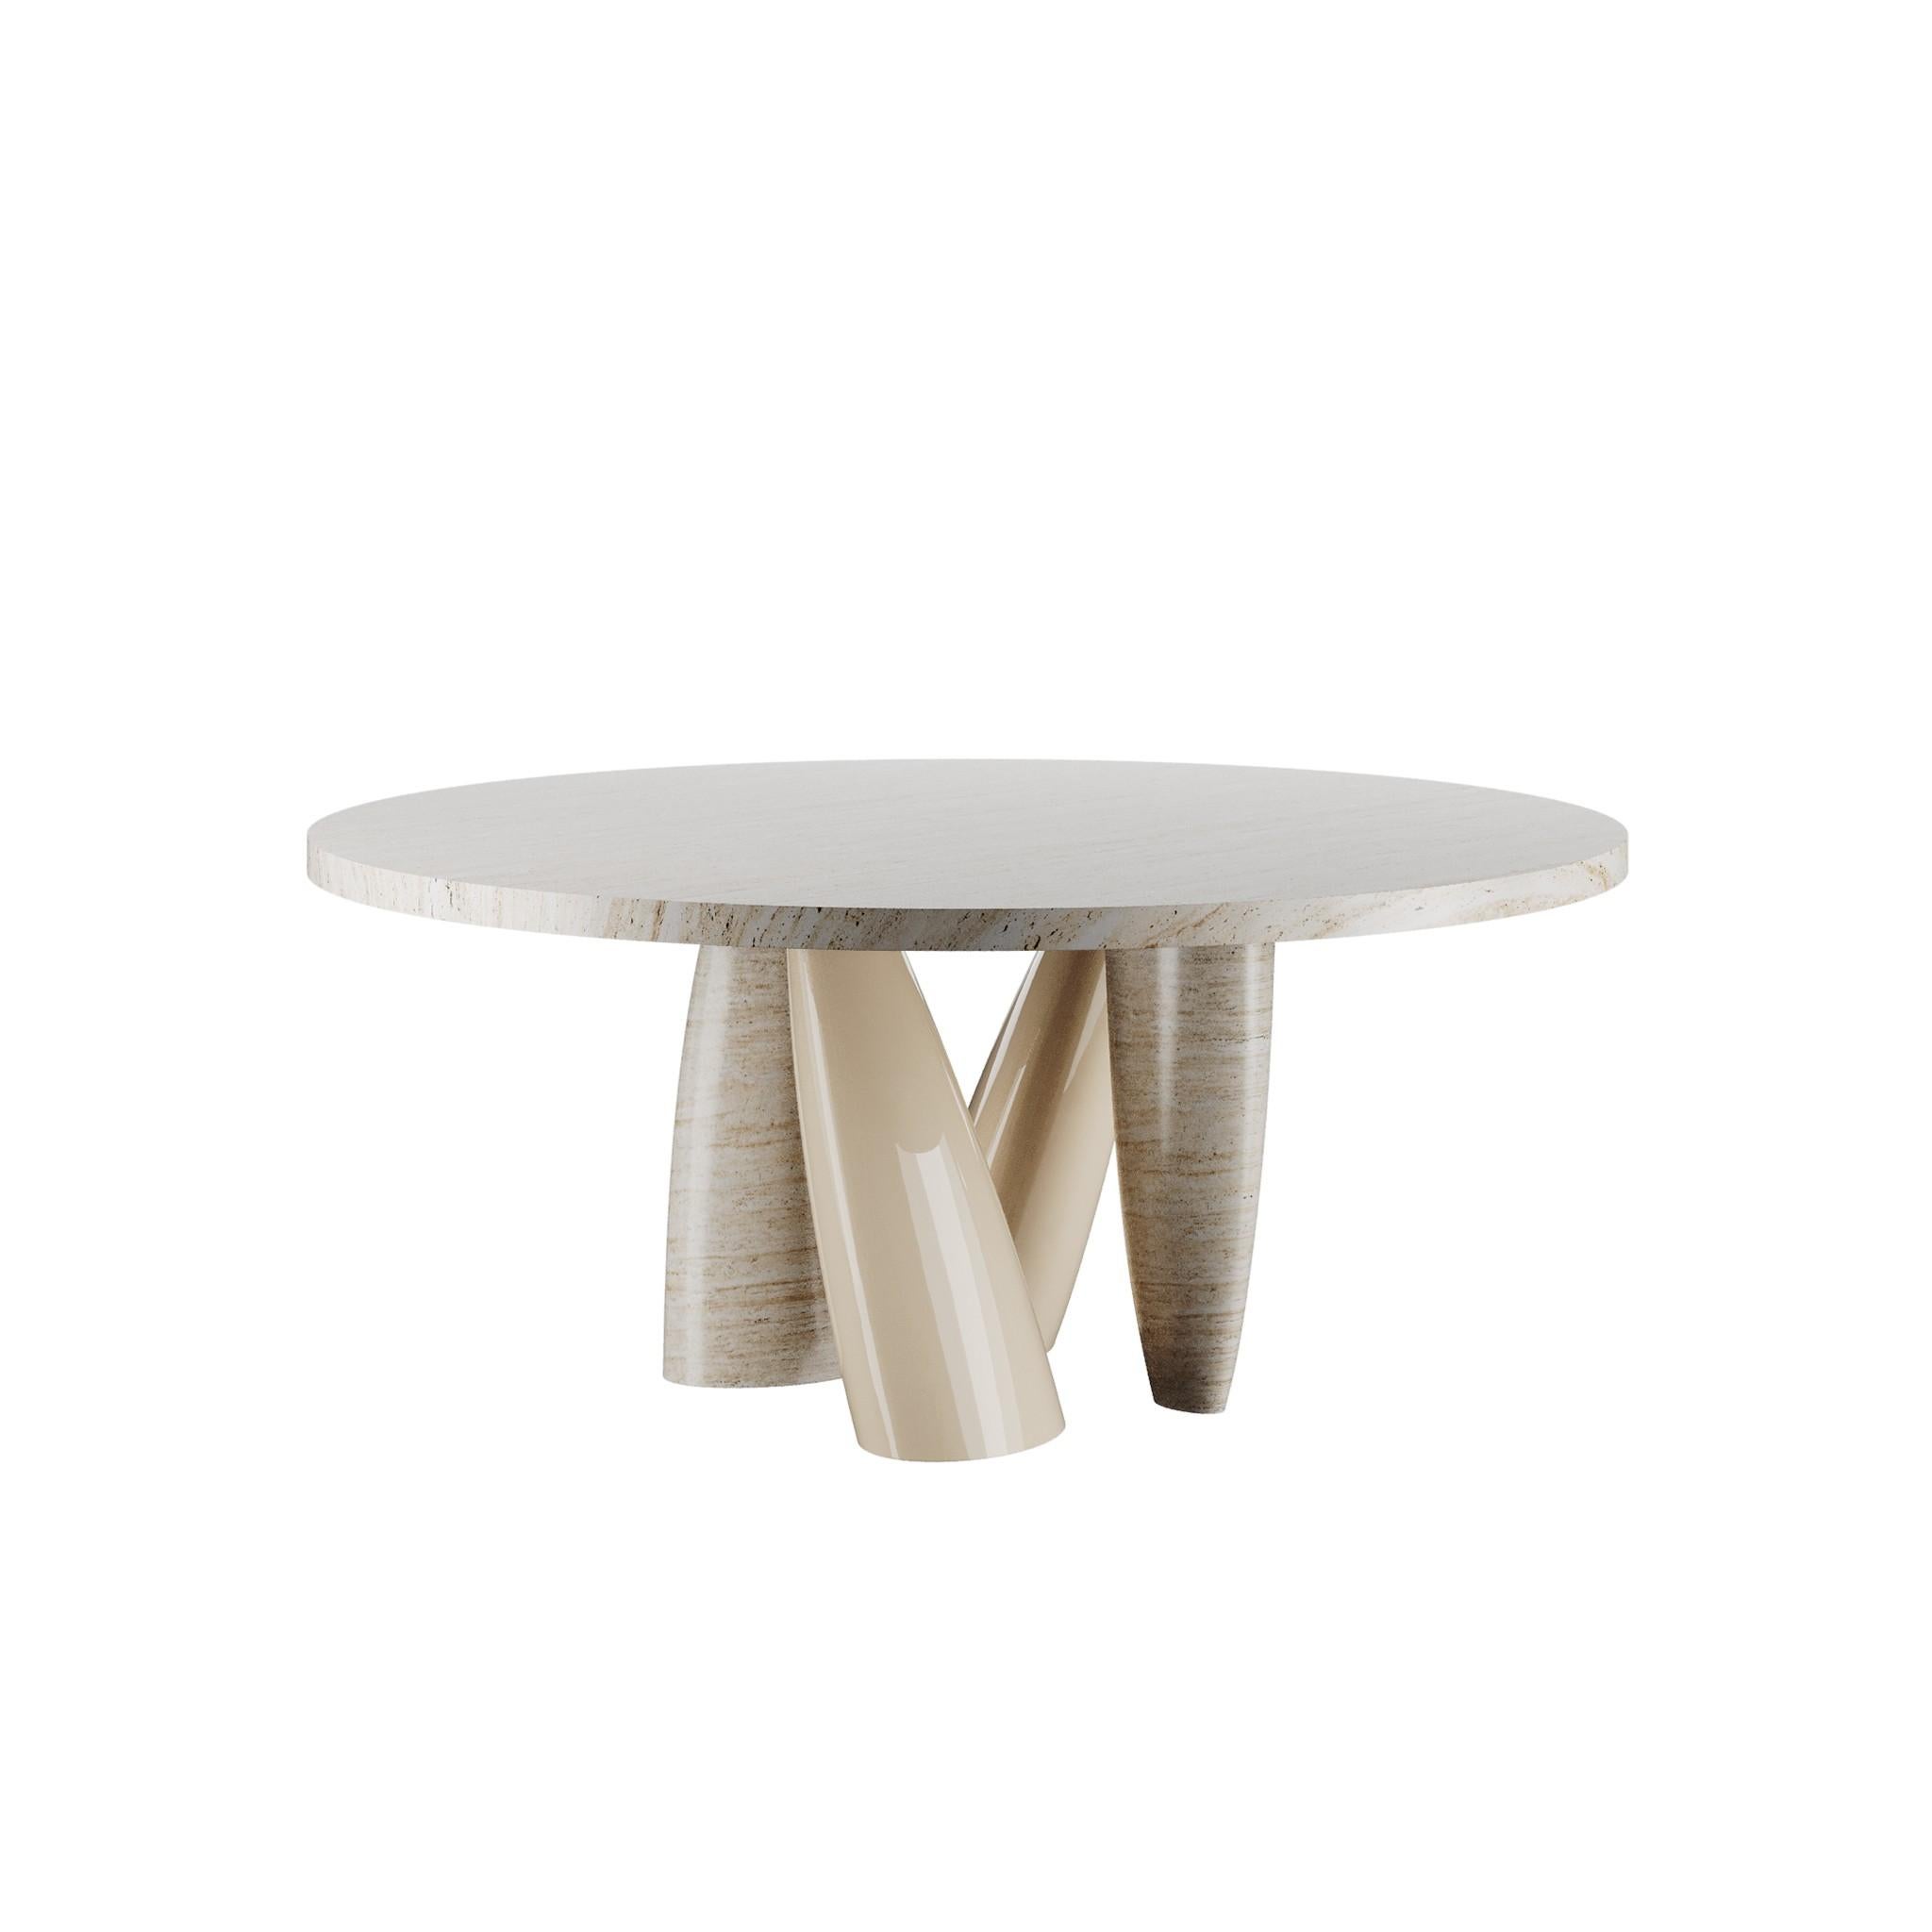 Billie Round Dining Table Travertine ist ein moderner Esstisch mit einer köstlichen Textur und einem reichen Wirbel von natürlichen Farben. Das schlichte Layout des Billie Round Dining Table Travertine schafft eine warme und doch anspruchsvolle